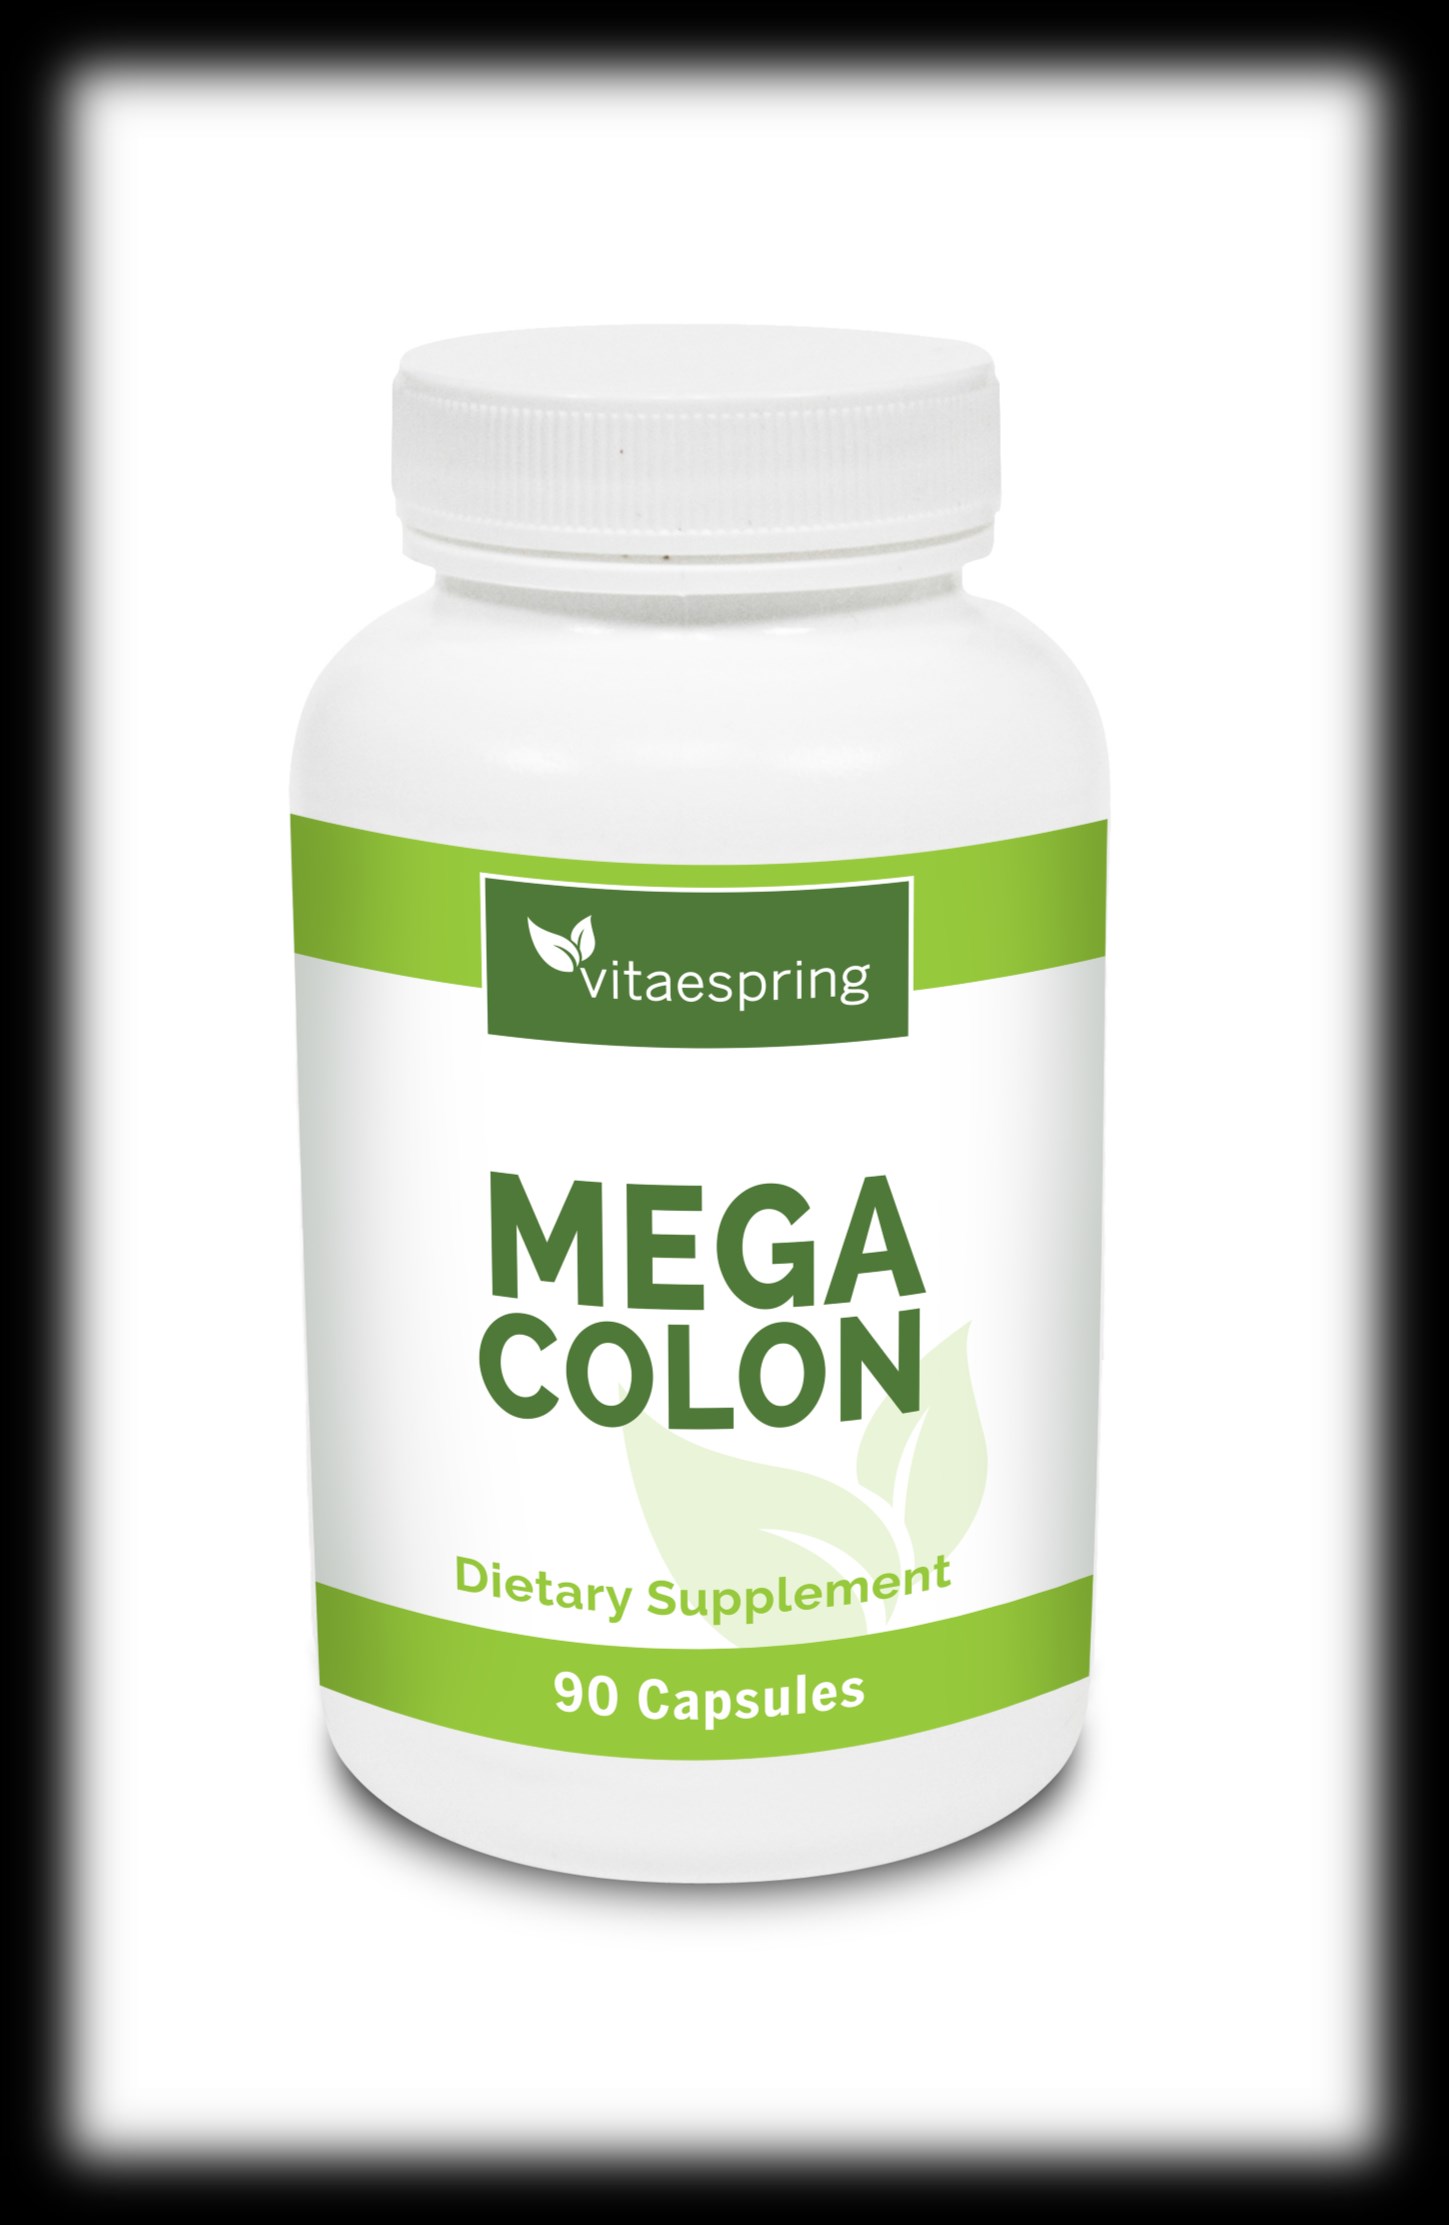 La excelente formula de megacolon, provee una potente accion de limpieza y purificación de tu organismo, sin ser agresivo y sin efectos secundarios.